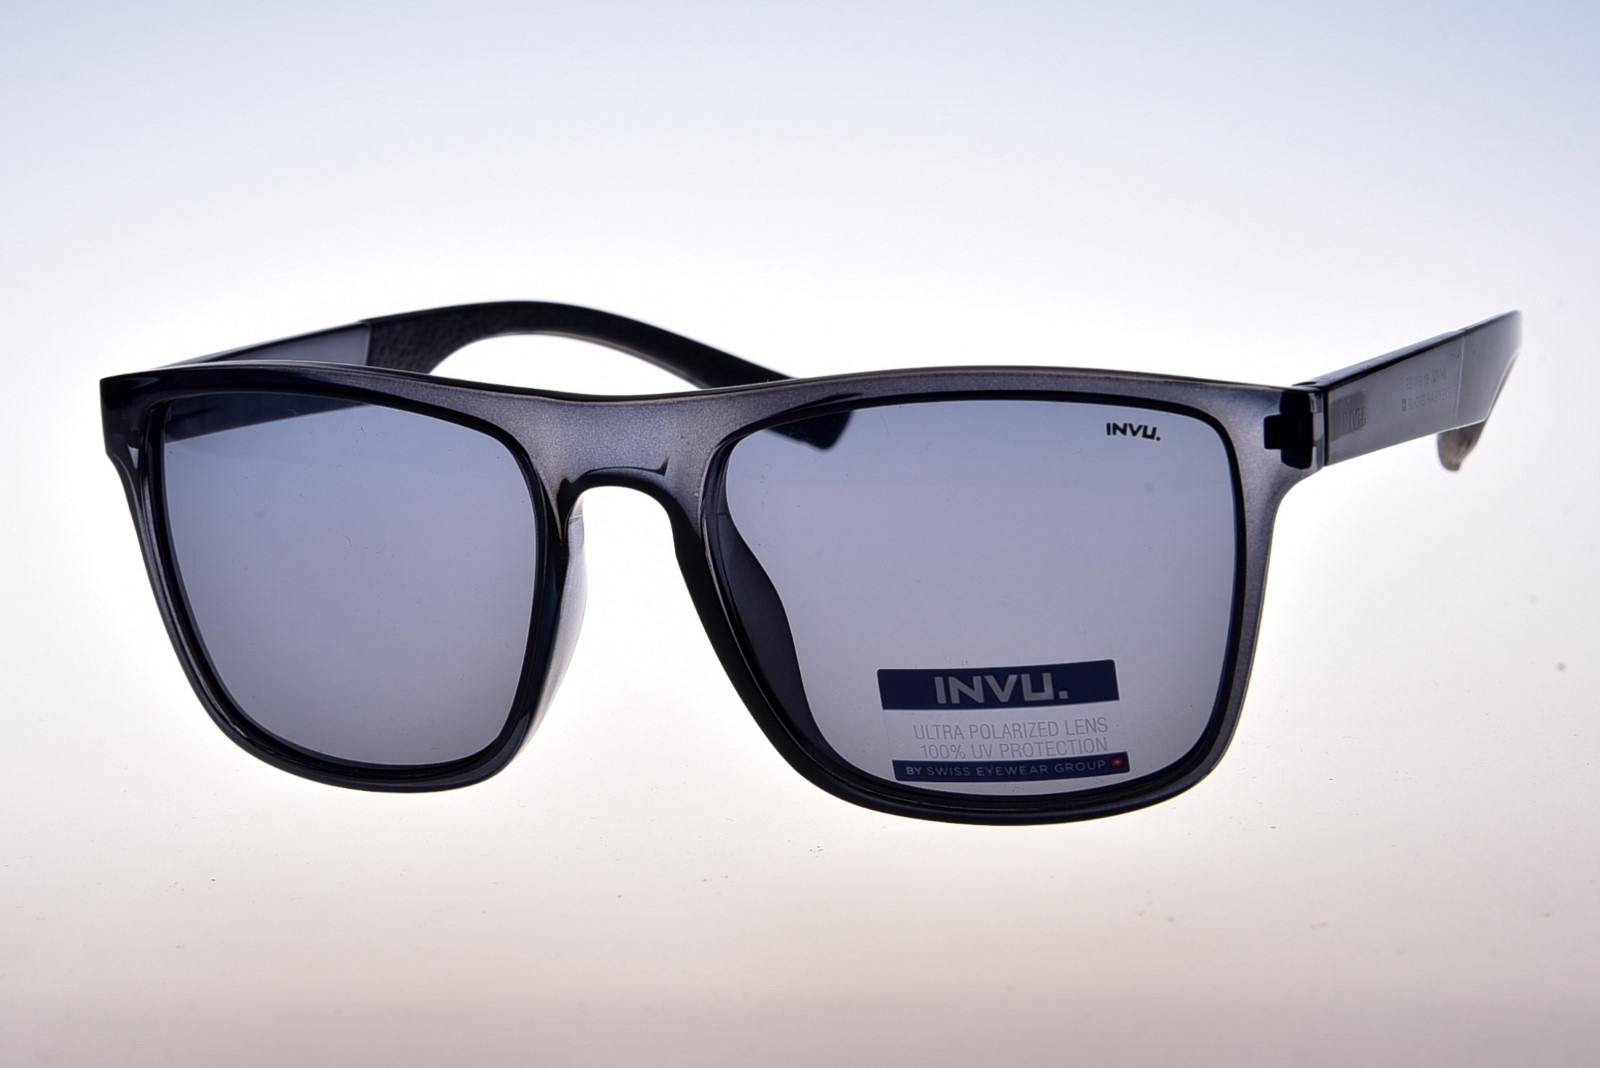 INVU. B2014A - Pánske slnečné okuliare